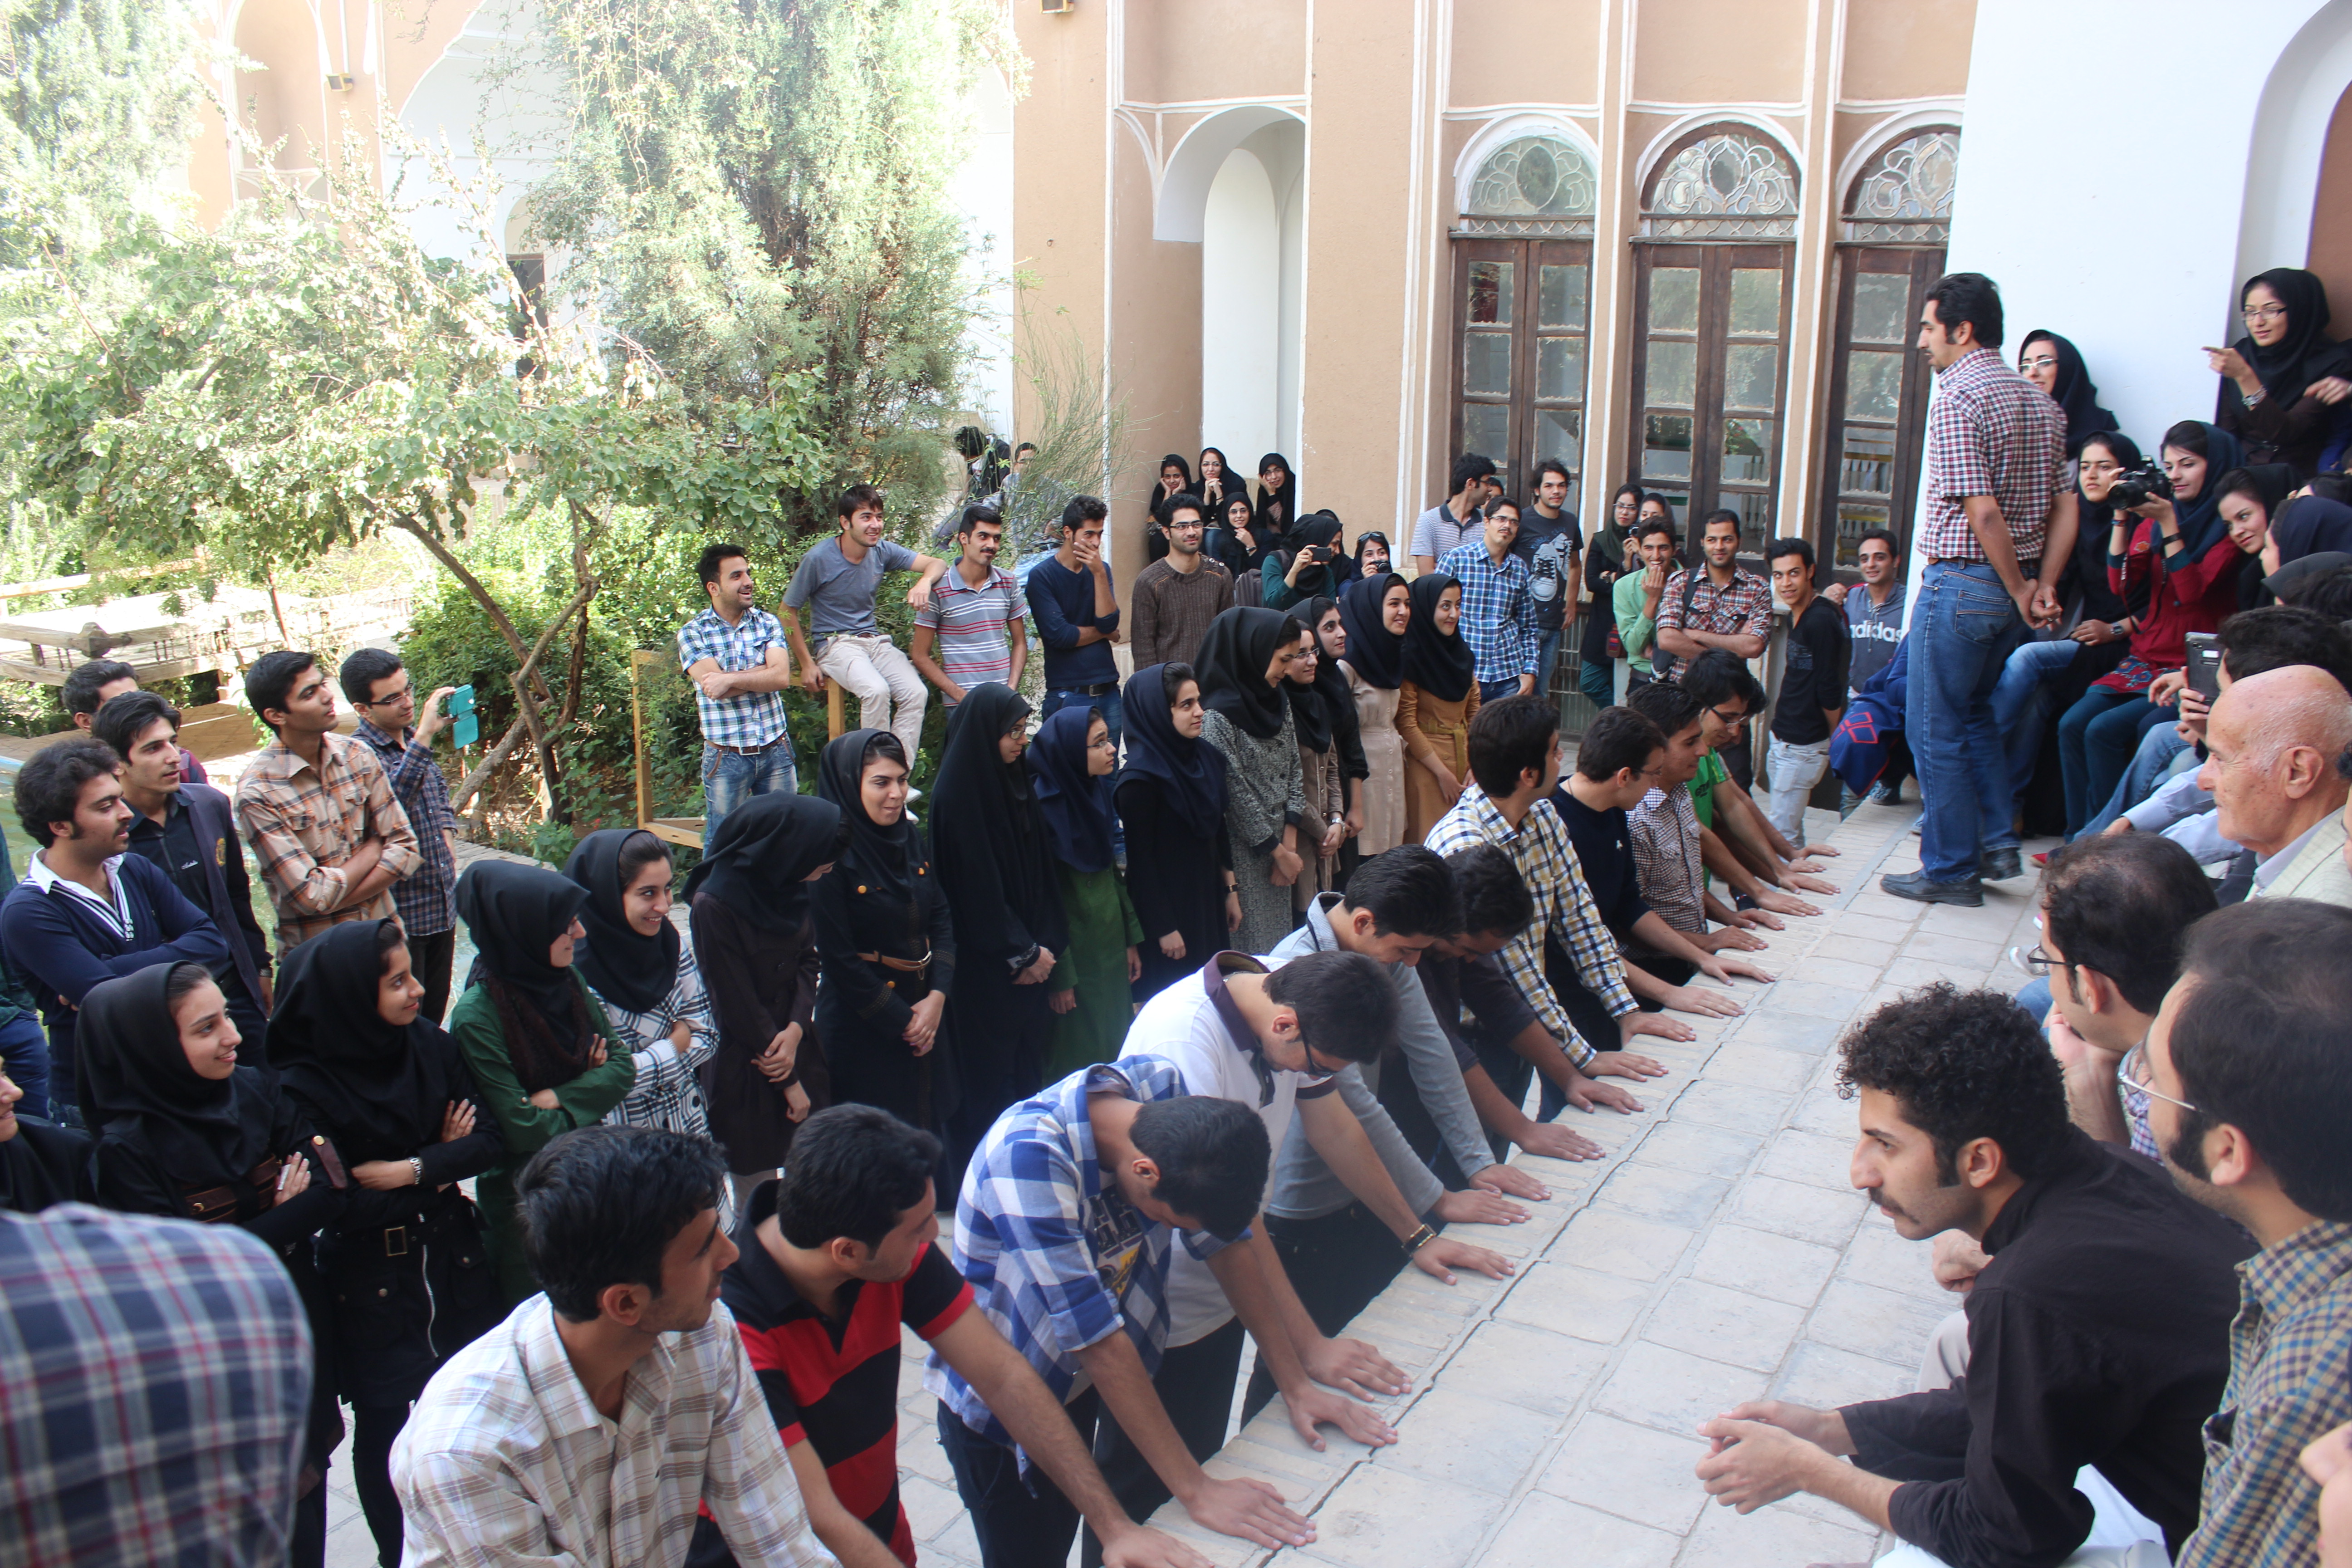 تصاویر جدید از مراسم «تحقیر دانشجویان» در دانشگاه یزد 